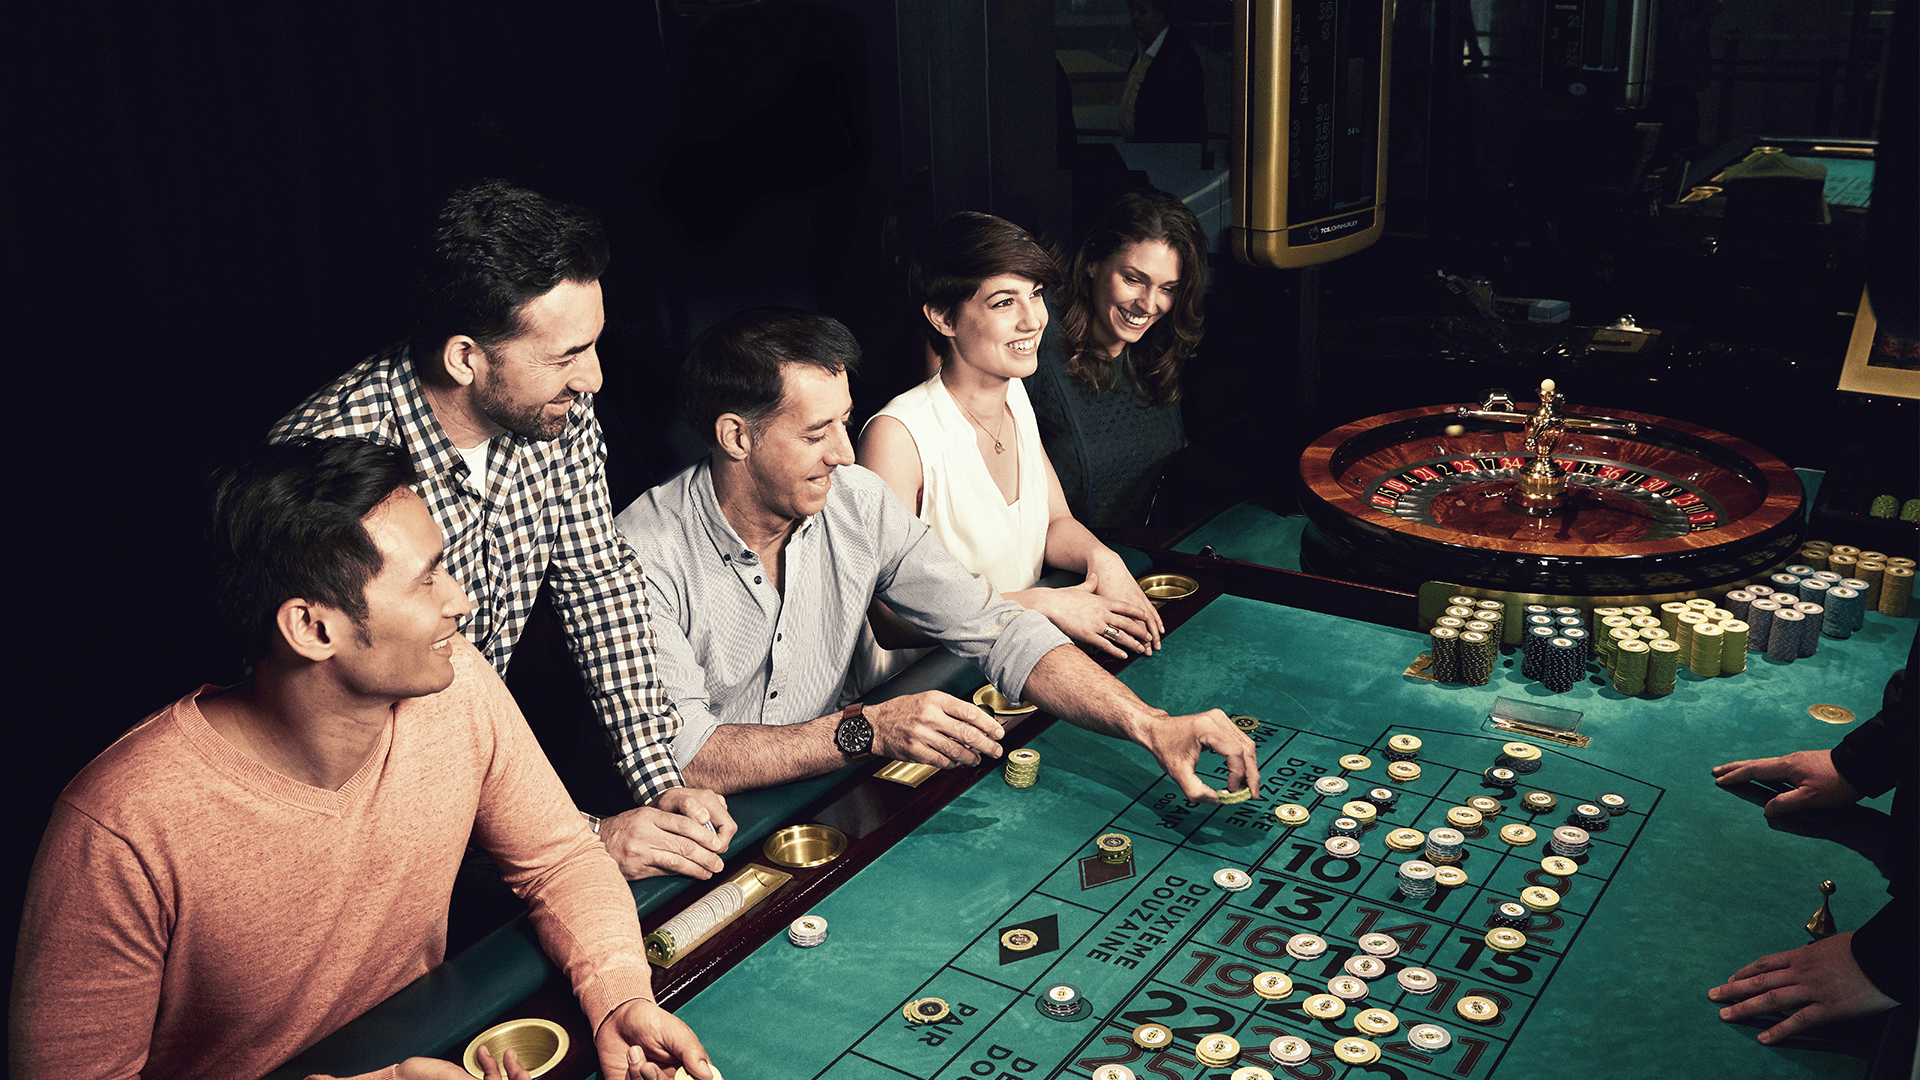 Quy tắc chơi cùng tỷ lệ nhà cái Blackjack tại sòng bạc trực tuyến